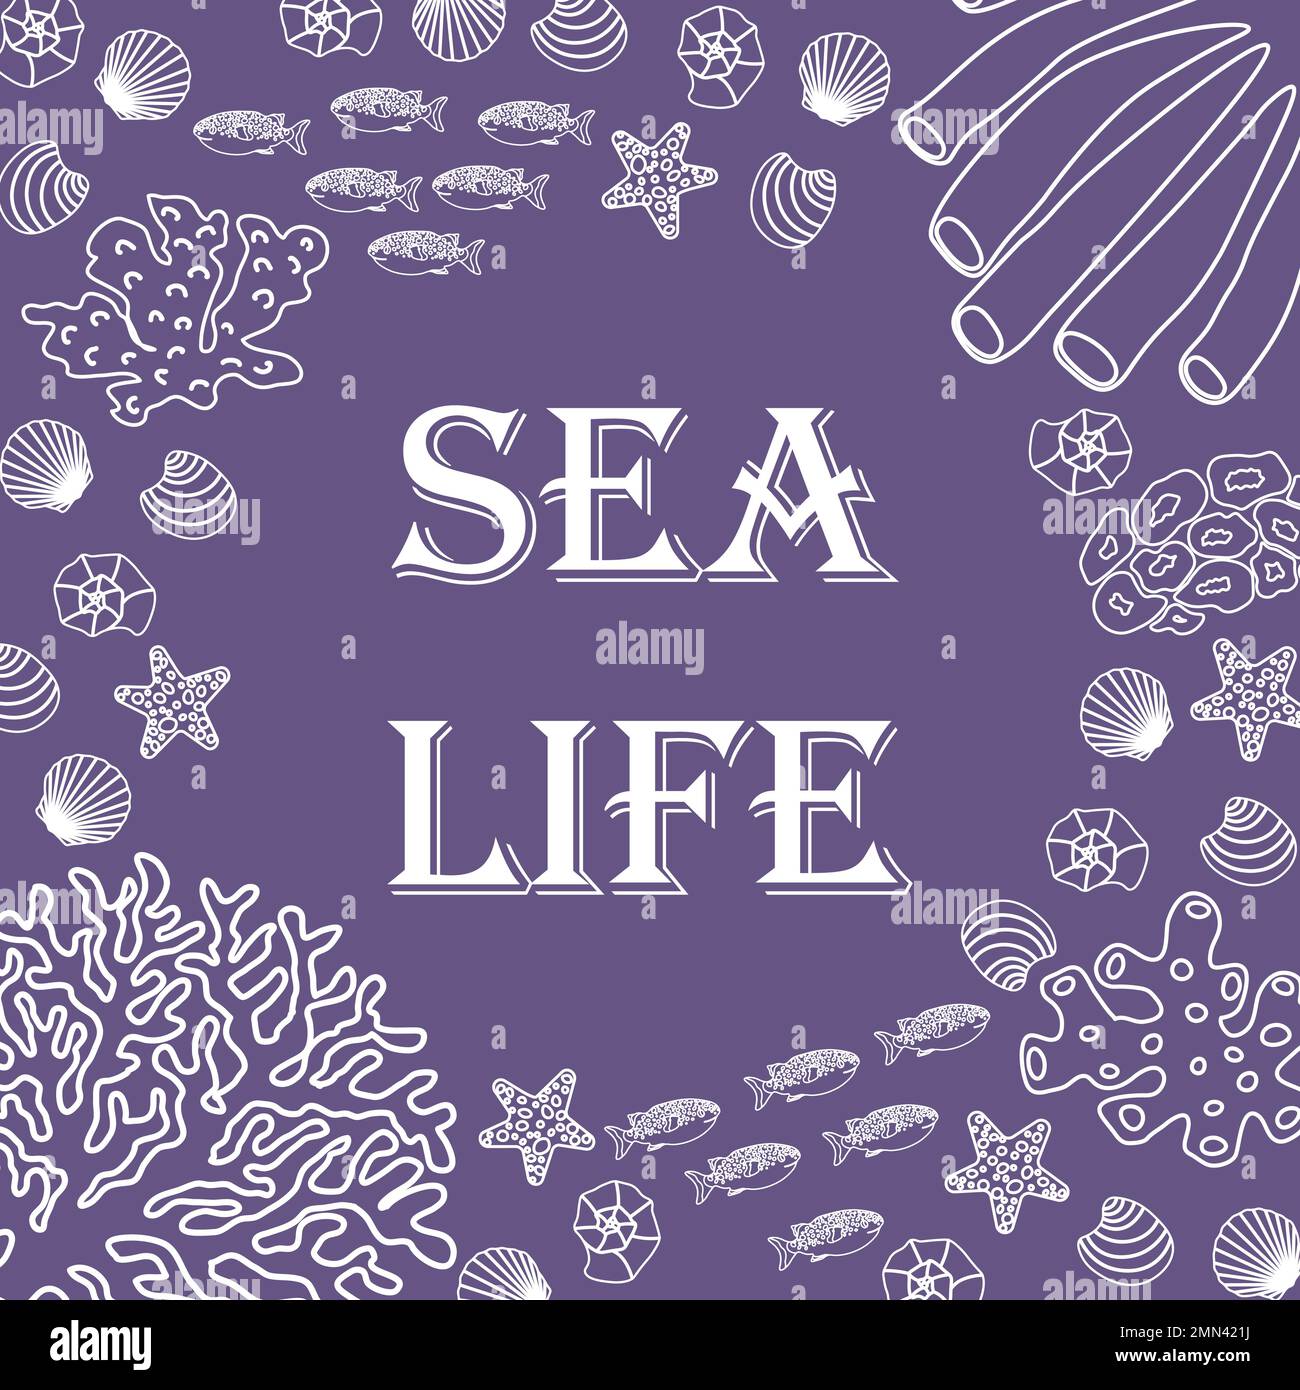 Vektor-Ozean-Illustration mit Fischen, Muscheln, Korallen, Algen. Sea Life - Moderne Schriftzeichen. Unterwassertiere. Ökologisches Design für Banner, Flyer Stock Vektor